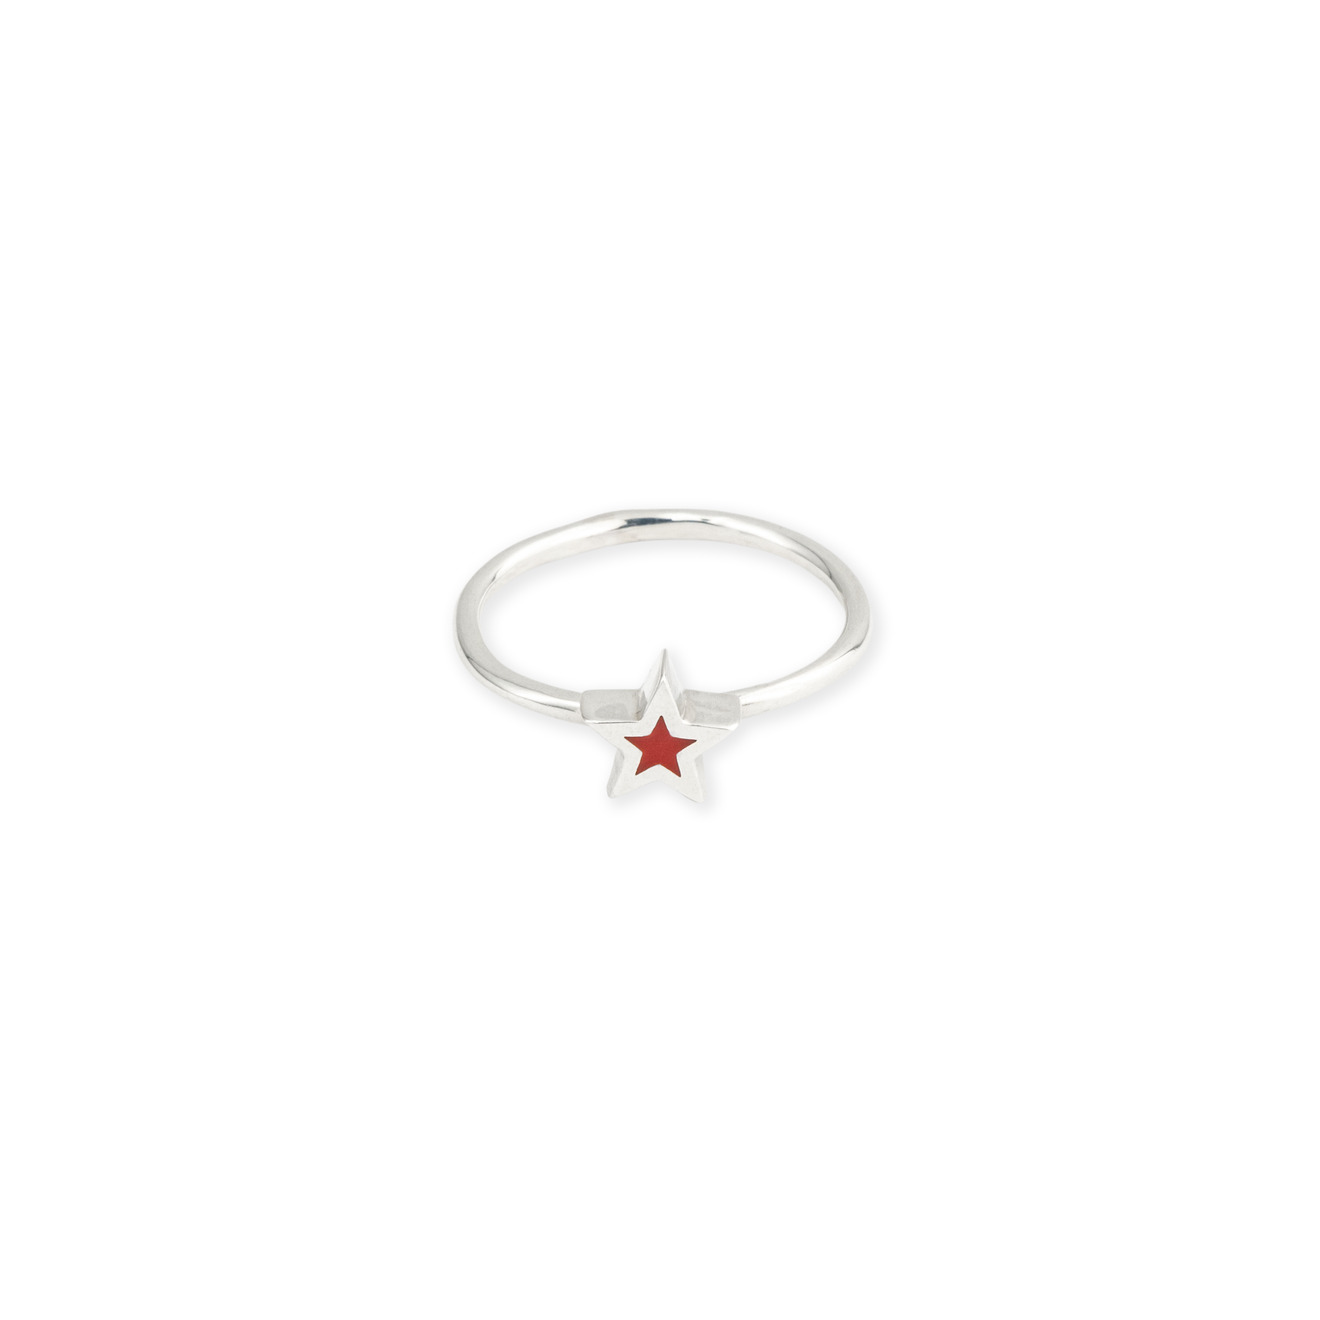 УРА jewelry Кольцо-звезда из серебра с красной эмалью ура jewelry кольцо из серебра с розовым сердцем эмаль